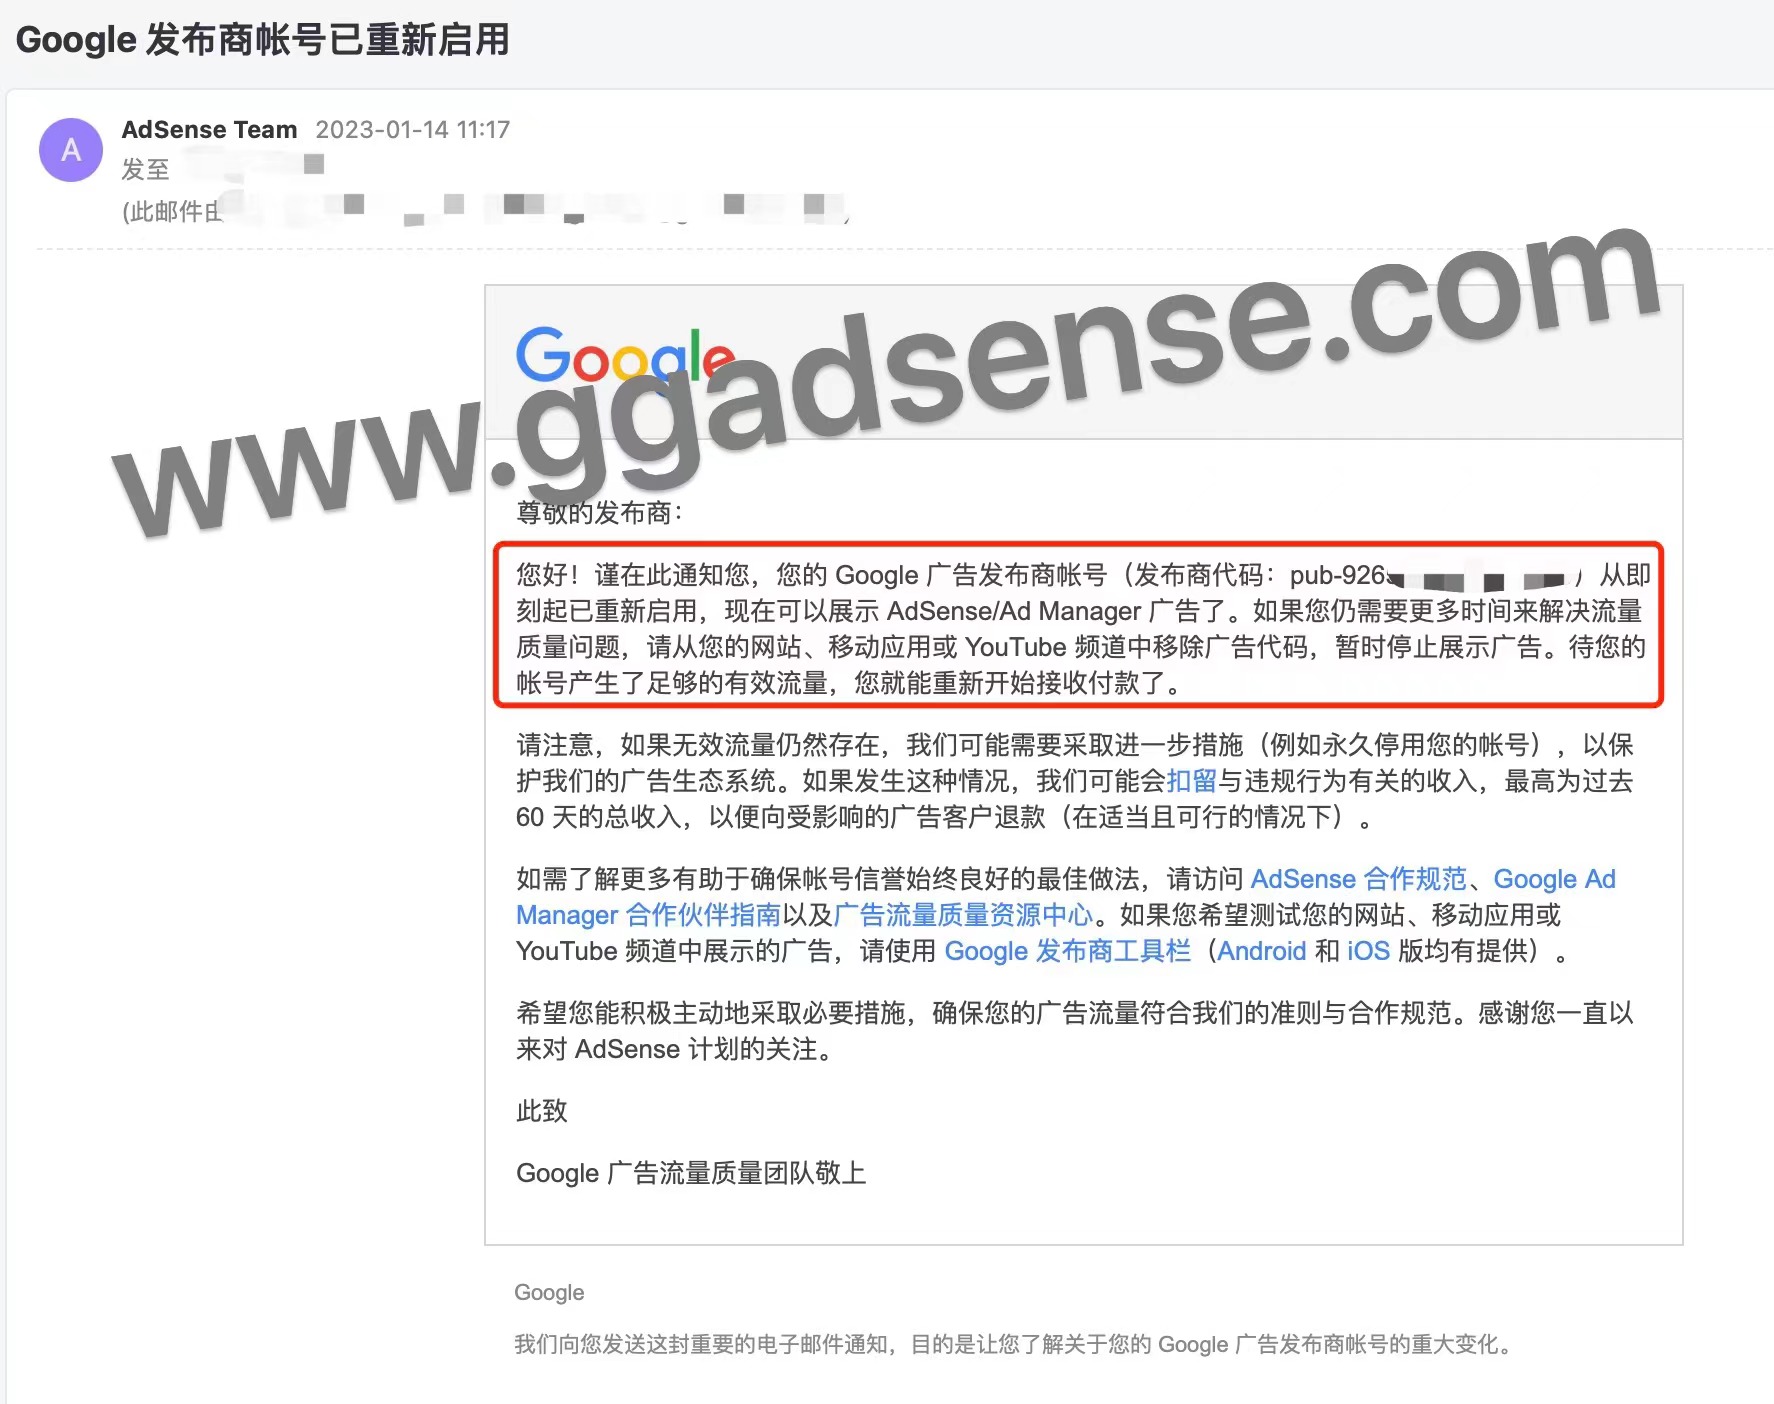 adsense无效流量暂停解除：Google 发布商帐号已重新启用